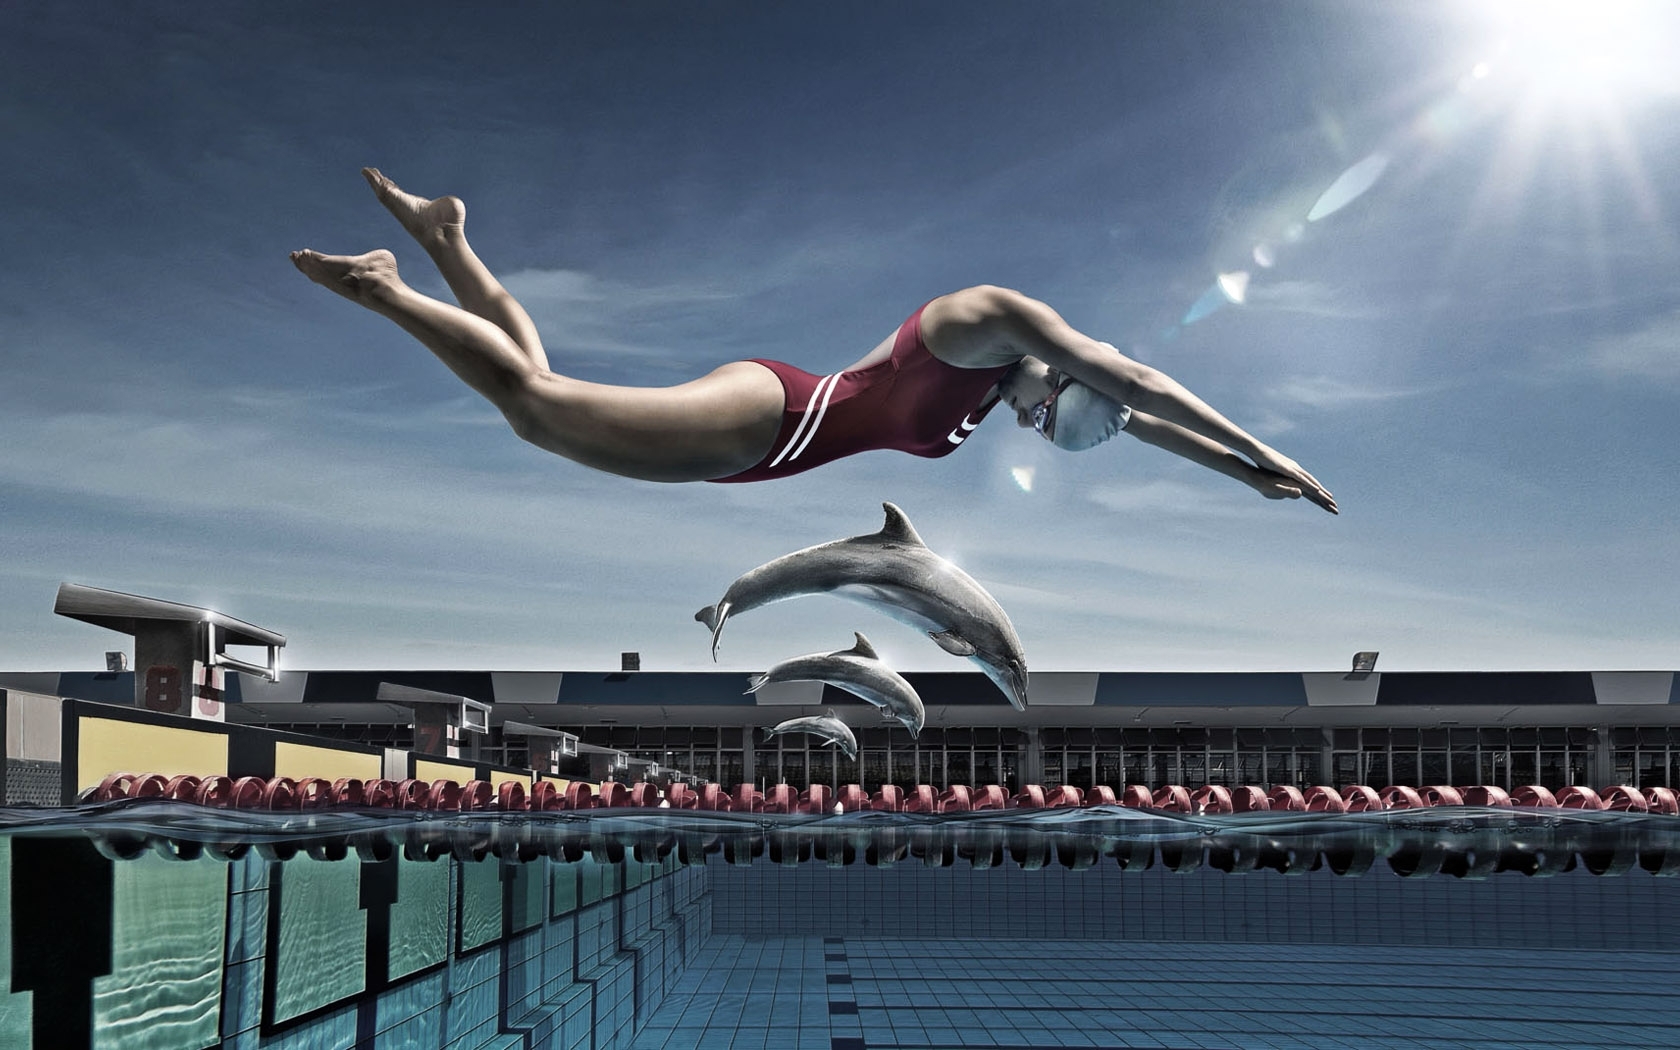 イメージを携帯電話にダウンロード 面白い スポーツ ピープル 水泳 無料 19